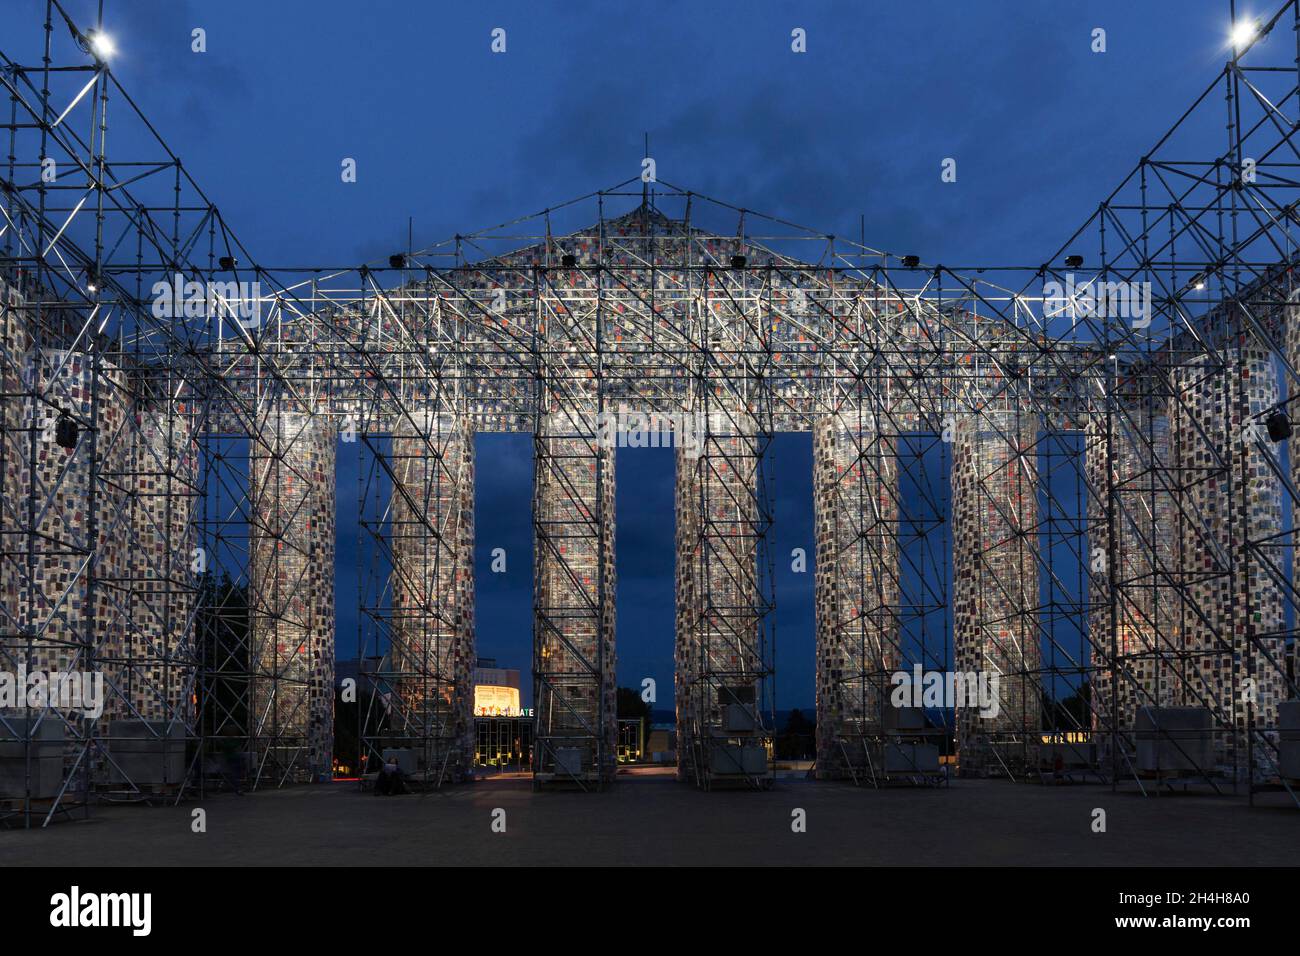 Marta Minujin, das Parthenon der Bücher, der Documenta 14, Friedrichsplatz, Kassel, Hessen, Deutschland Stockfoto